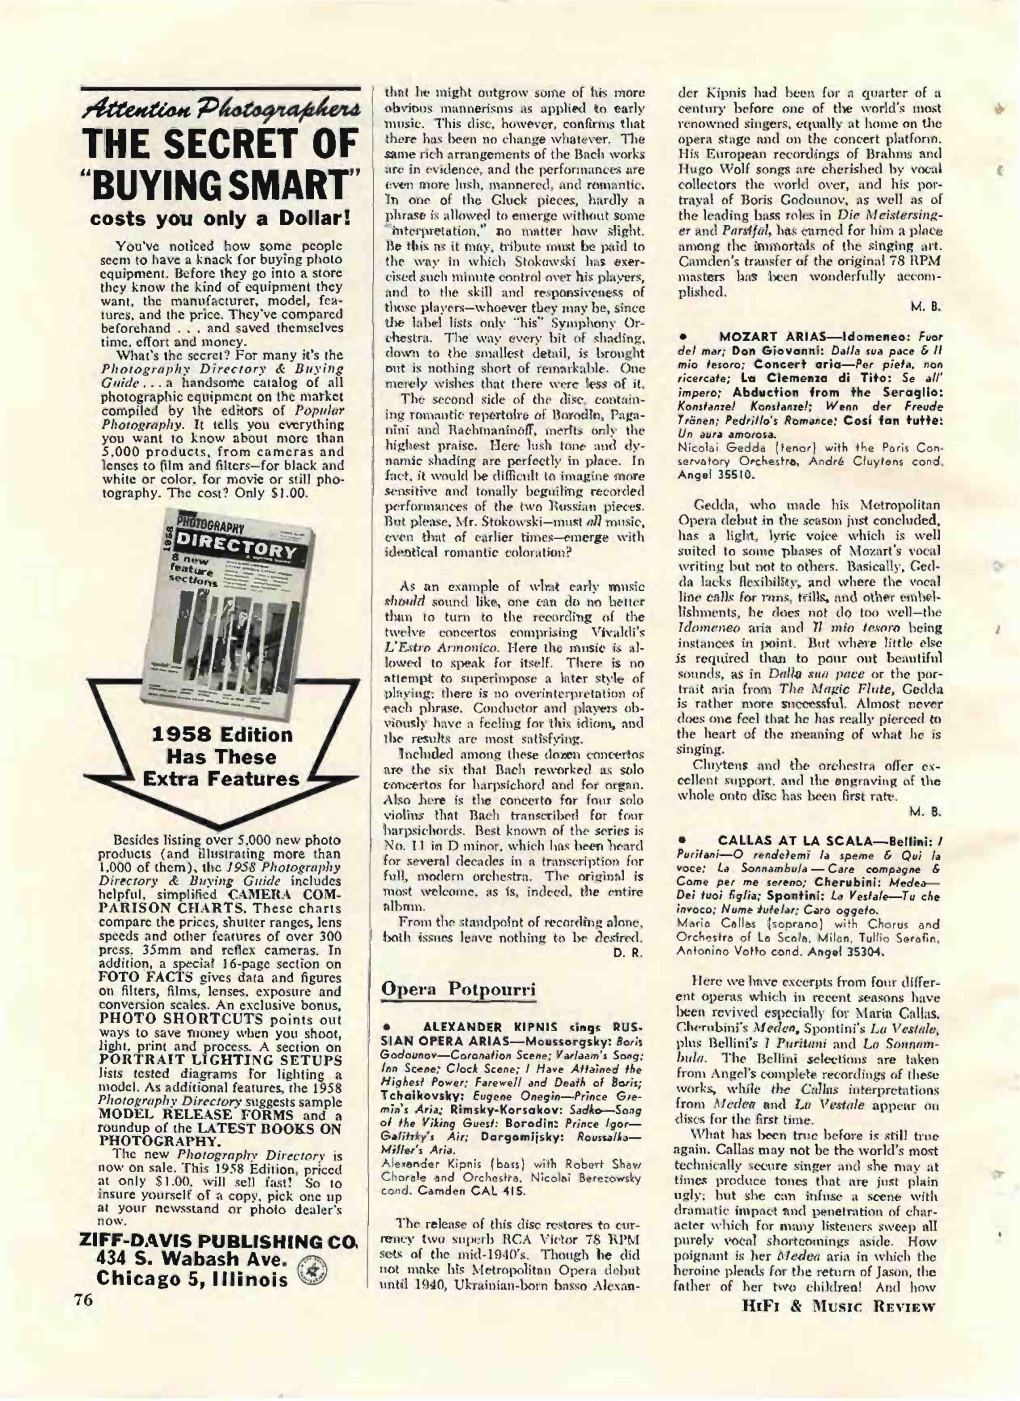 Hifi & Music Review June 1958